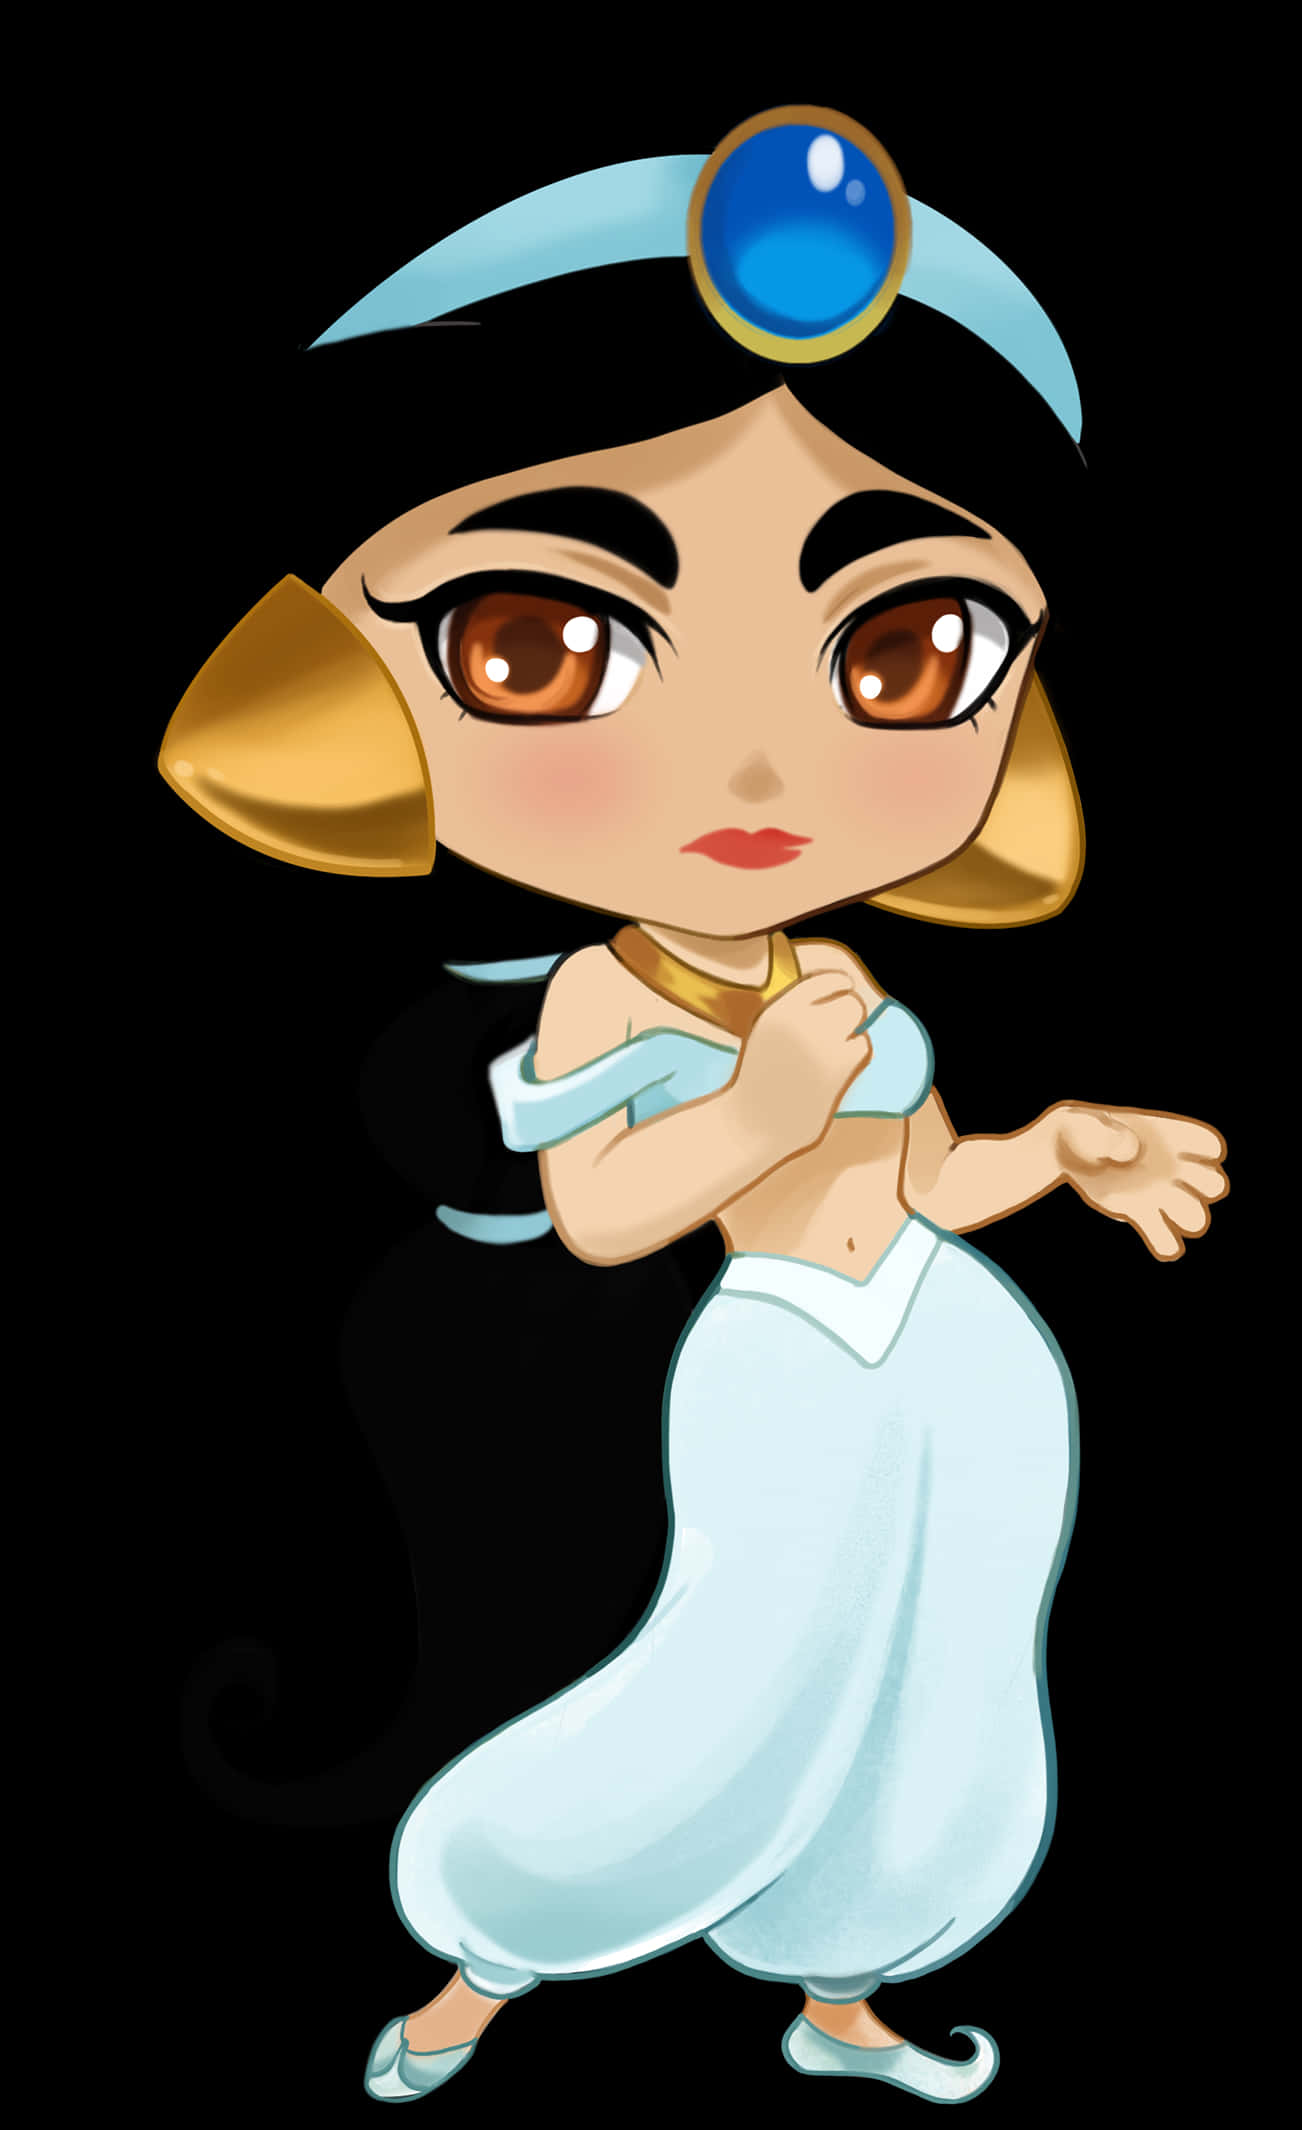 Chibi Disney Princess Jasmine